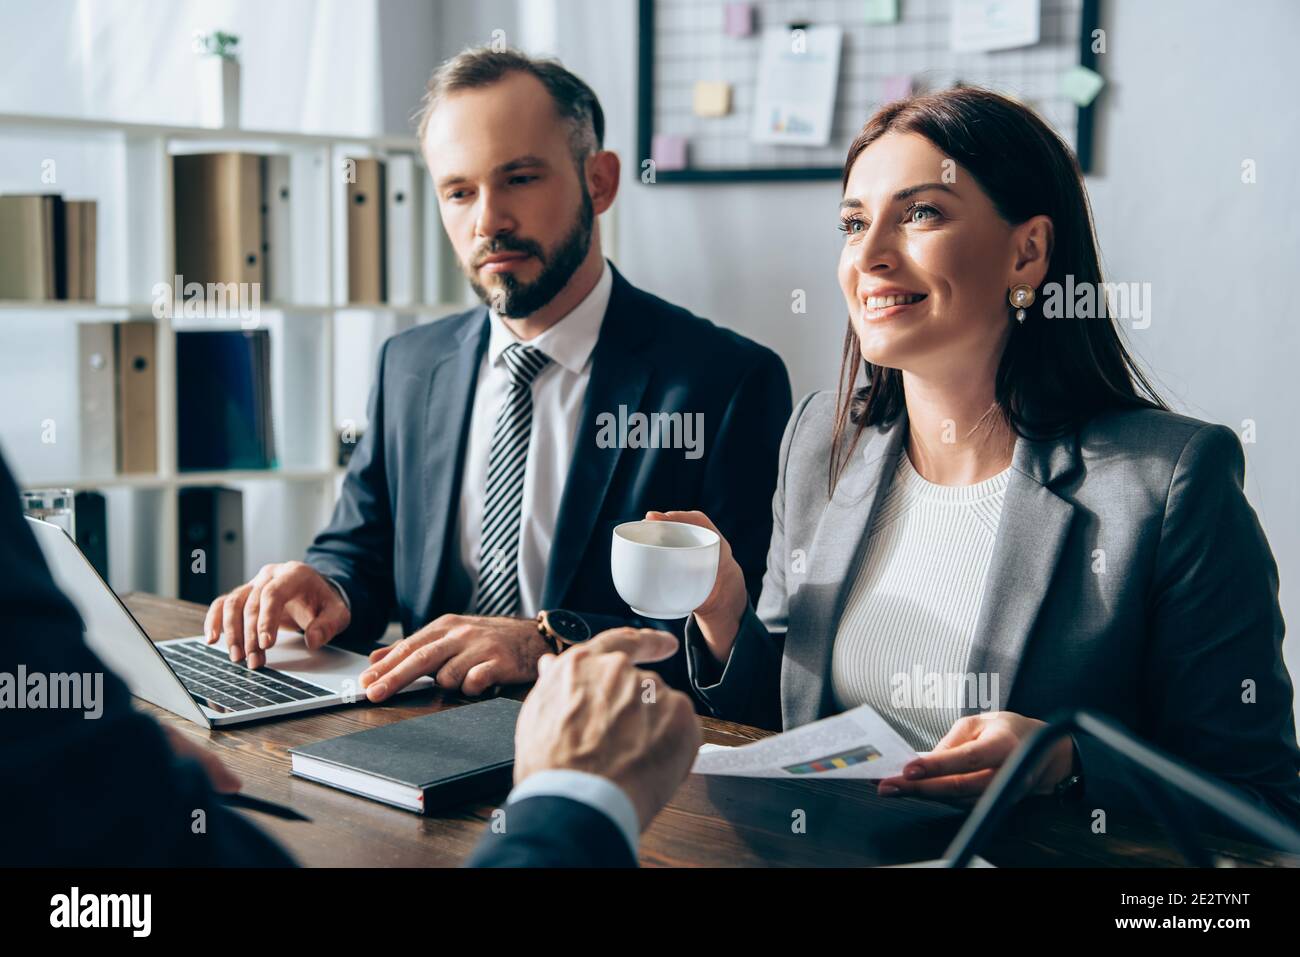 Femme d'affaires souriante tenant une tasse près d'un collègue utilisant un ordinateur portable et un investisseur pointage avec le doigt sur un premier plan flou Banque D'Images